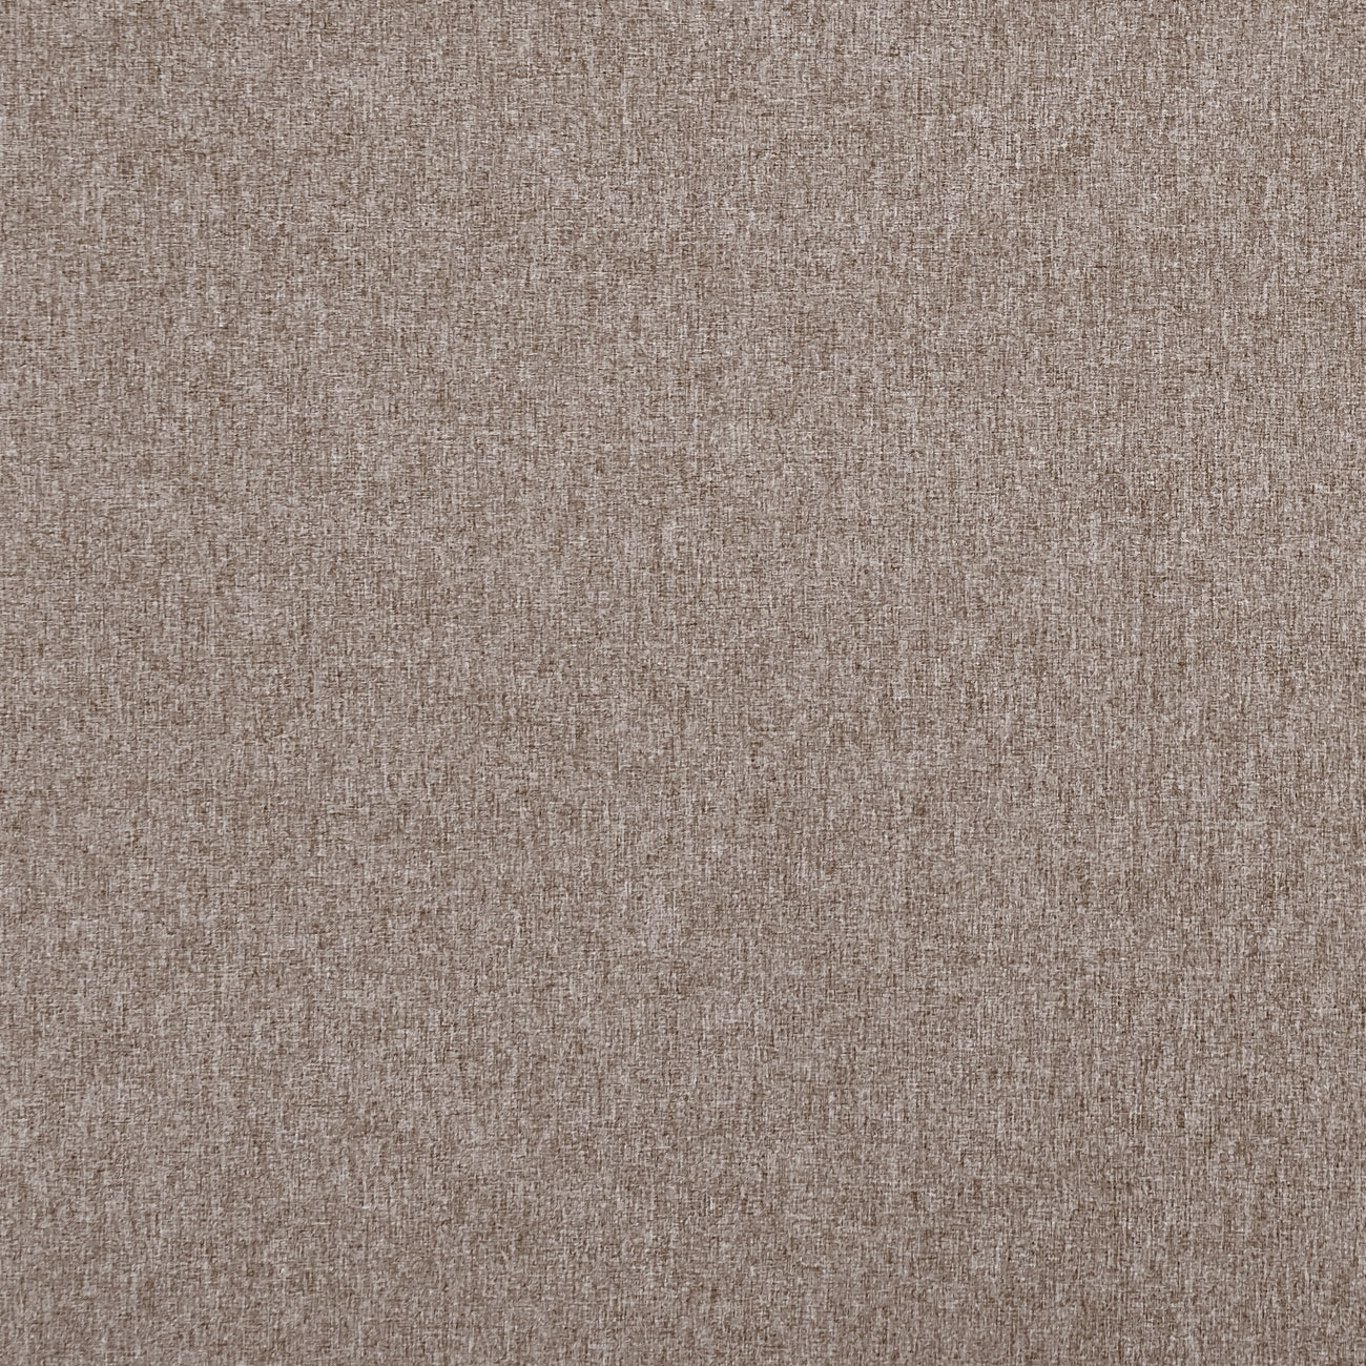 Highlander Mist Fabric by CNC